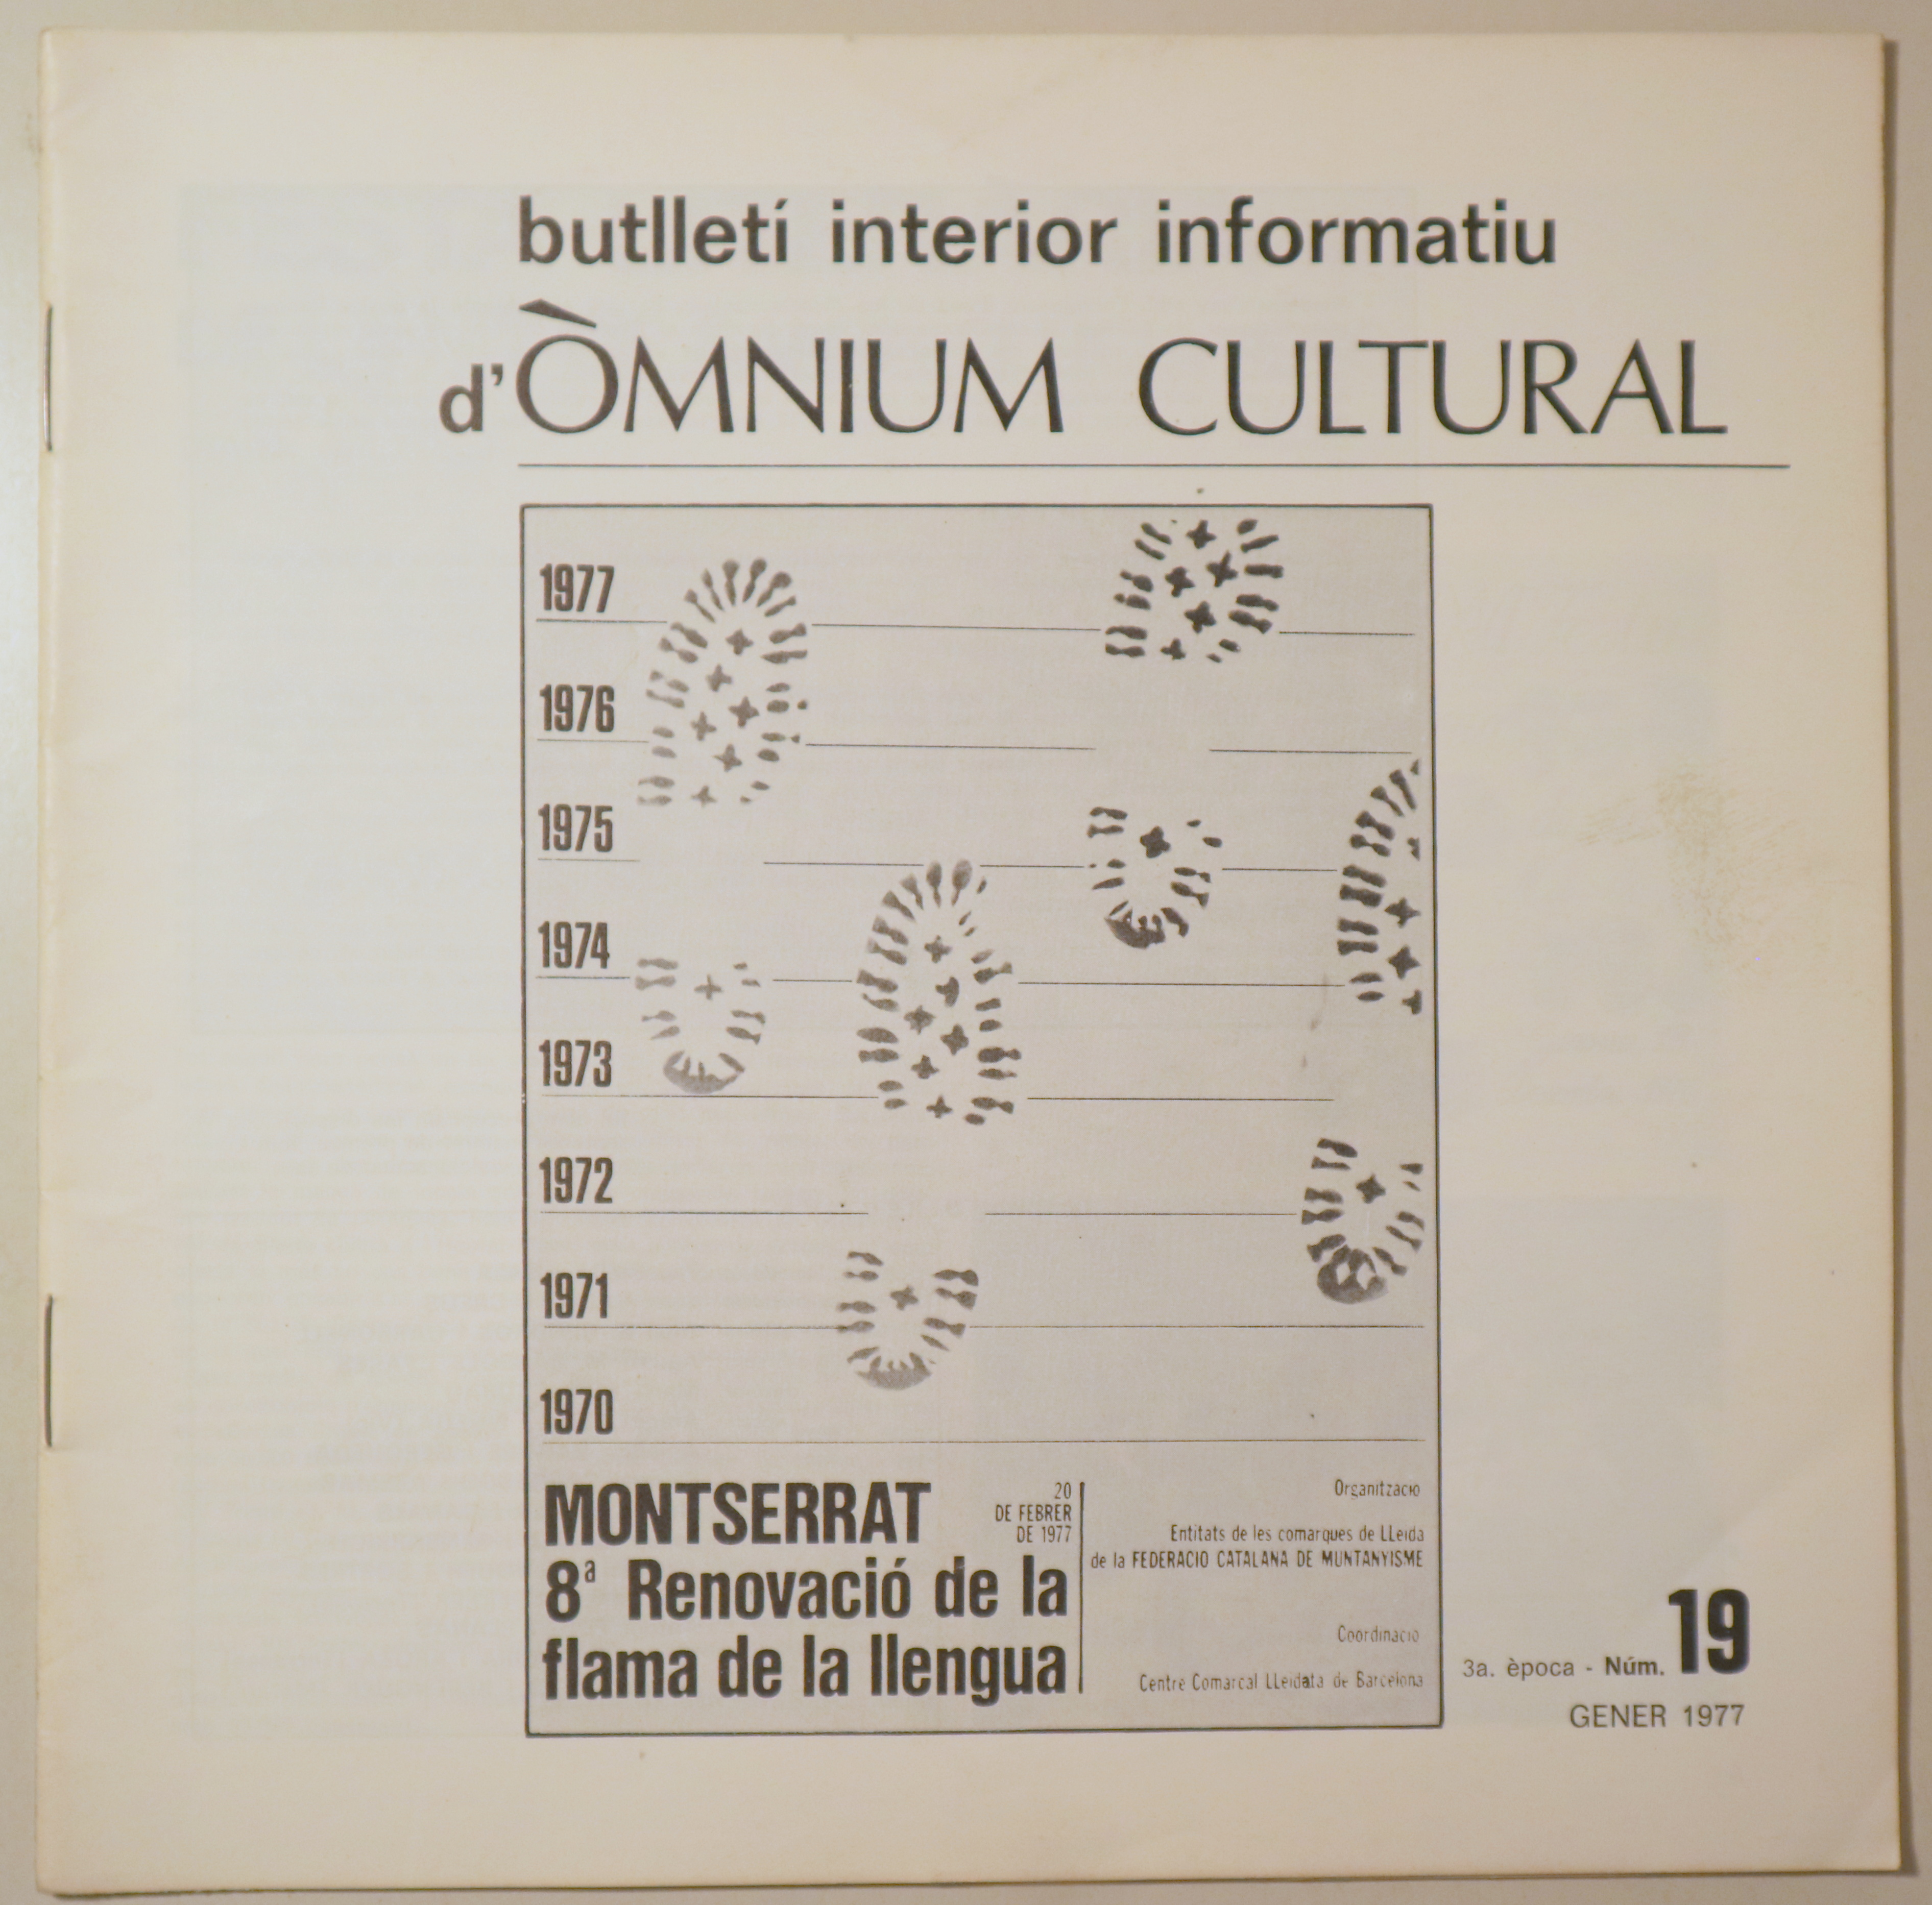 BUTLLETÍ INTERIOR INFORMATIU D'ÒMNIUM CULTURAL 3ª època, núm. 19. Gener 1977 - Barcelona 1977 - Il·lustrat